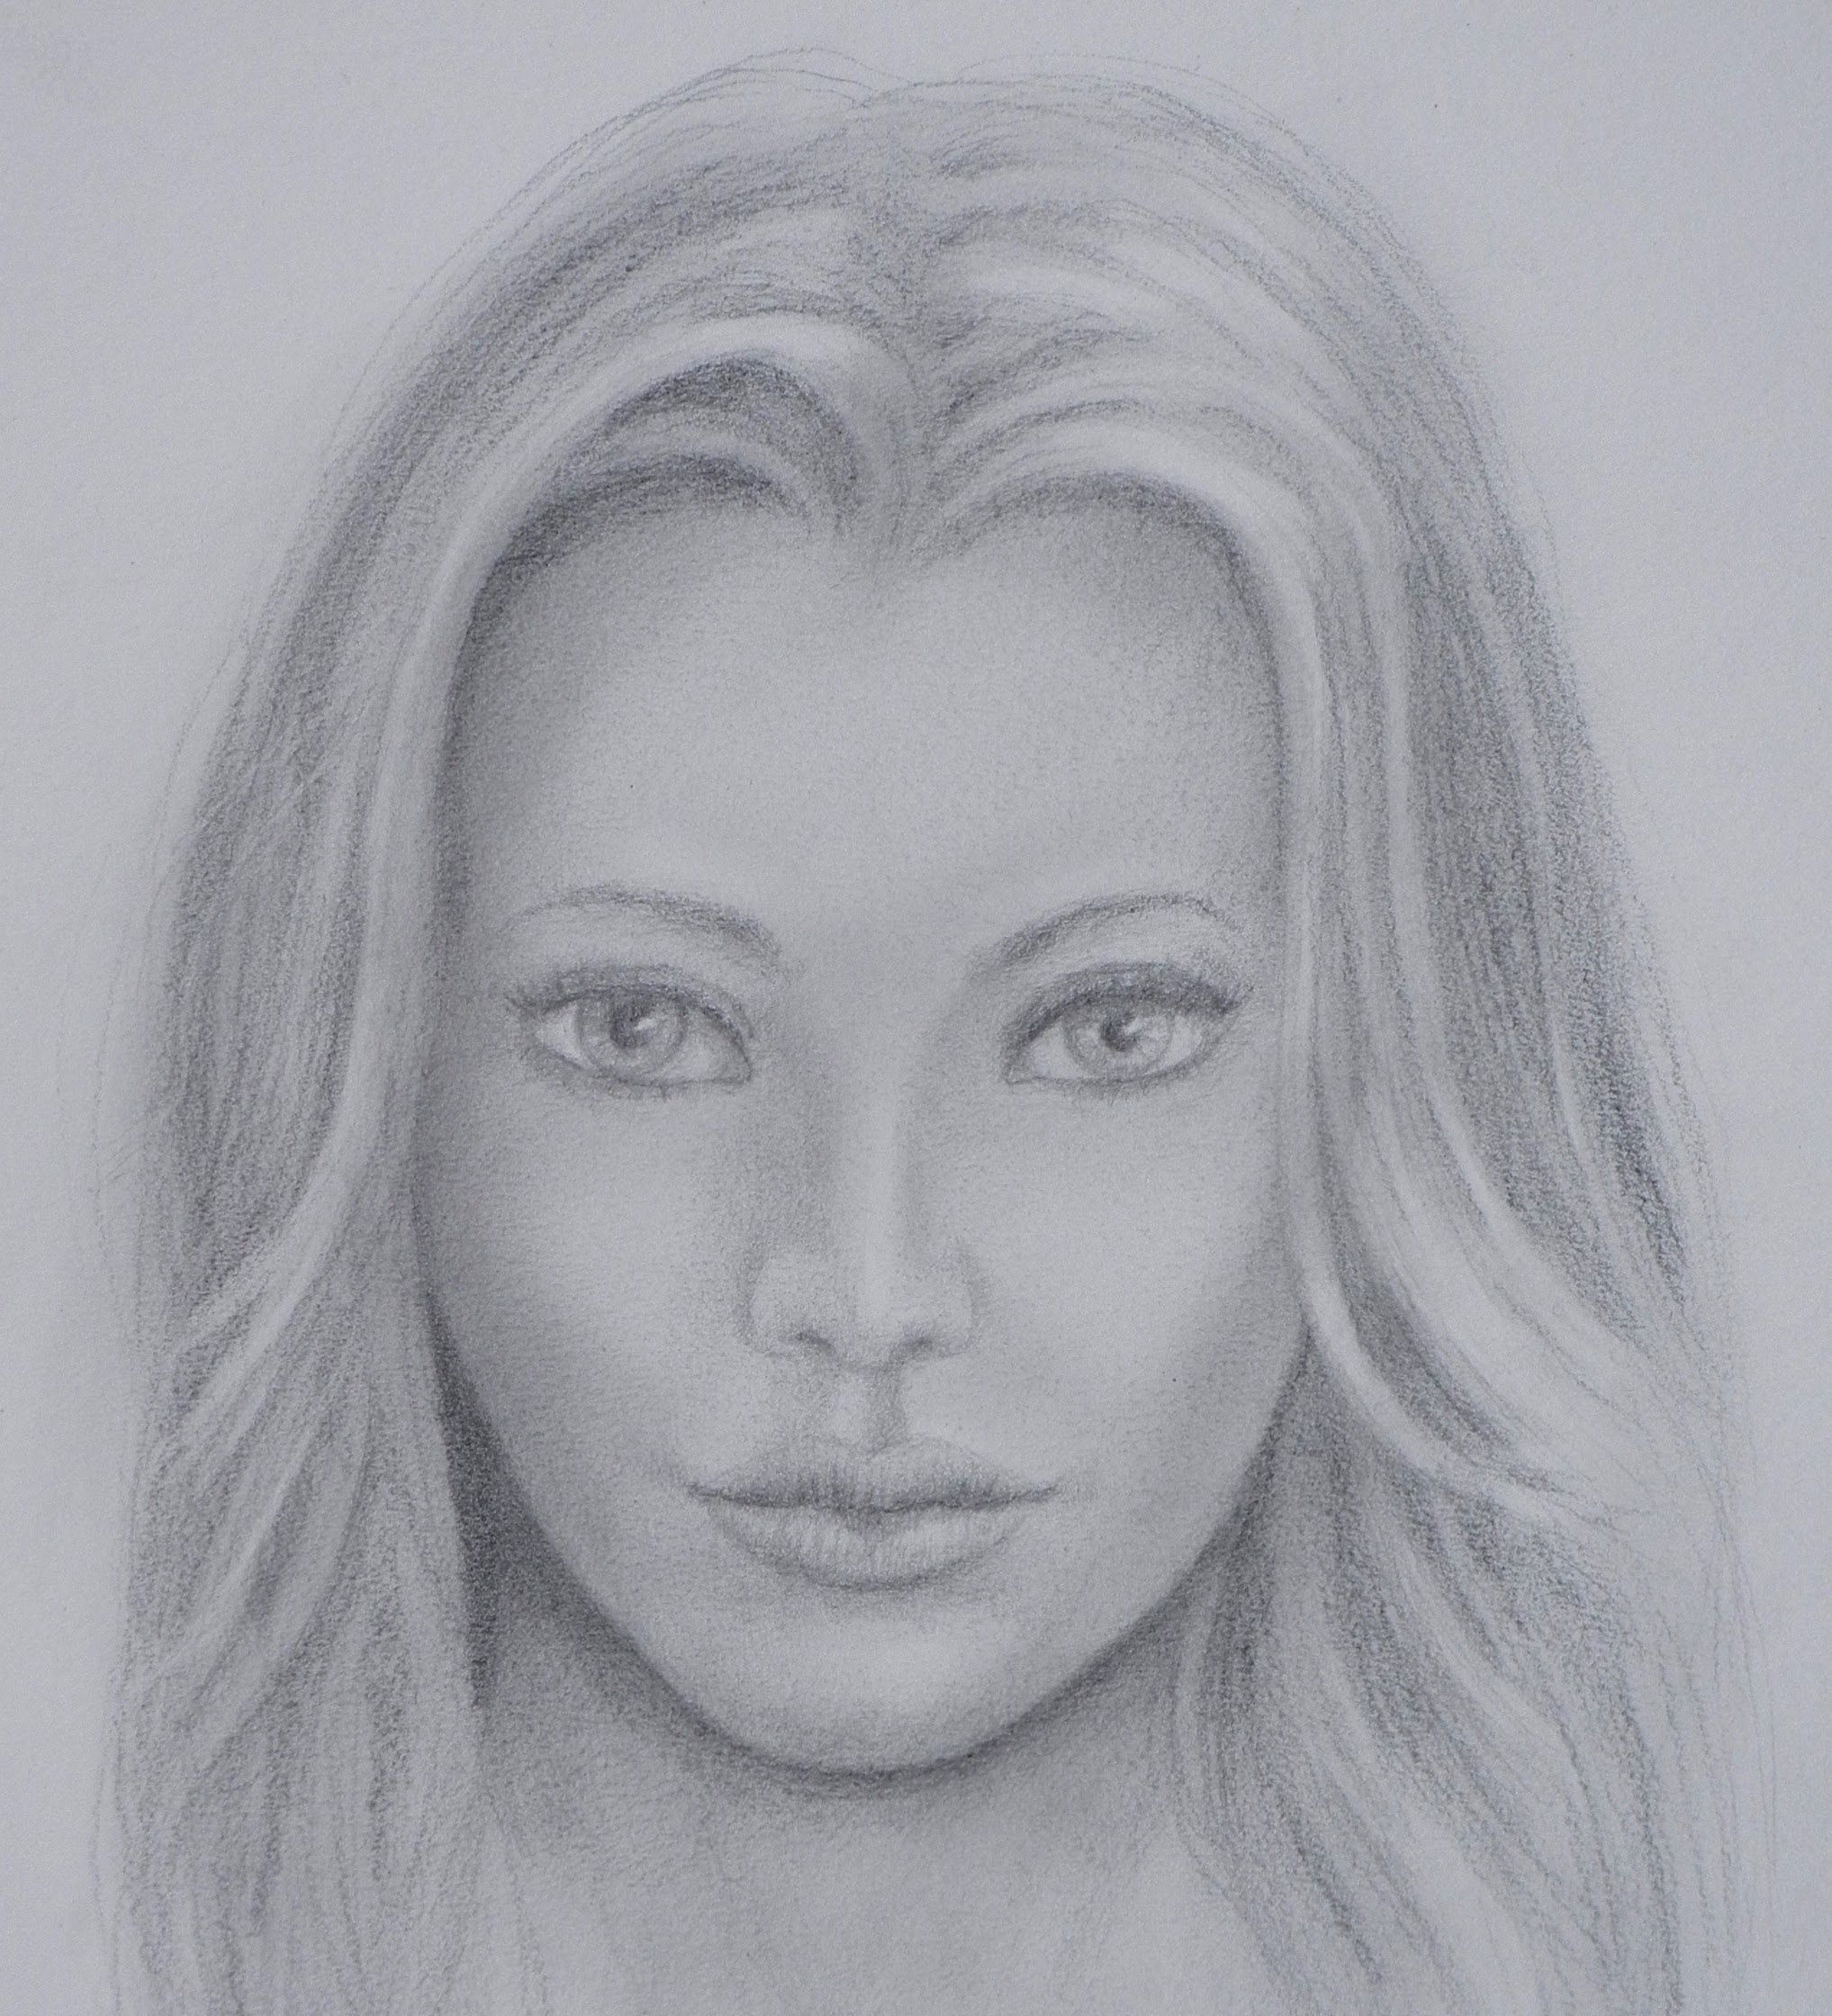 Лицо рисунок. Портрет девушки карандашом. Портрет карандашом легкий. Лицо человека карандашом. Рисование портрета карандашом.